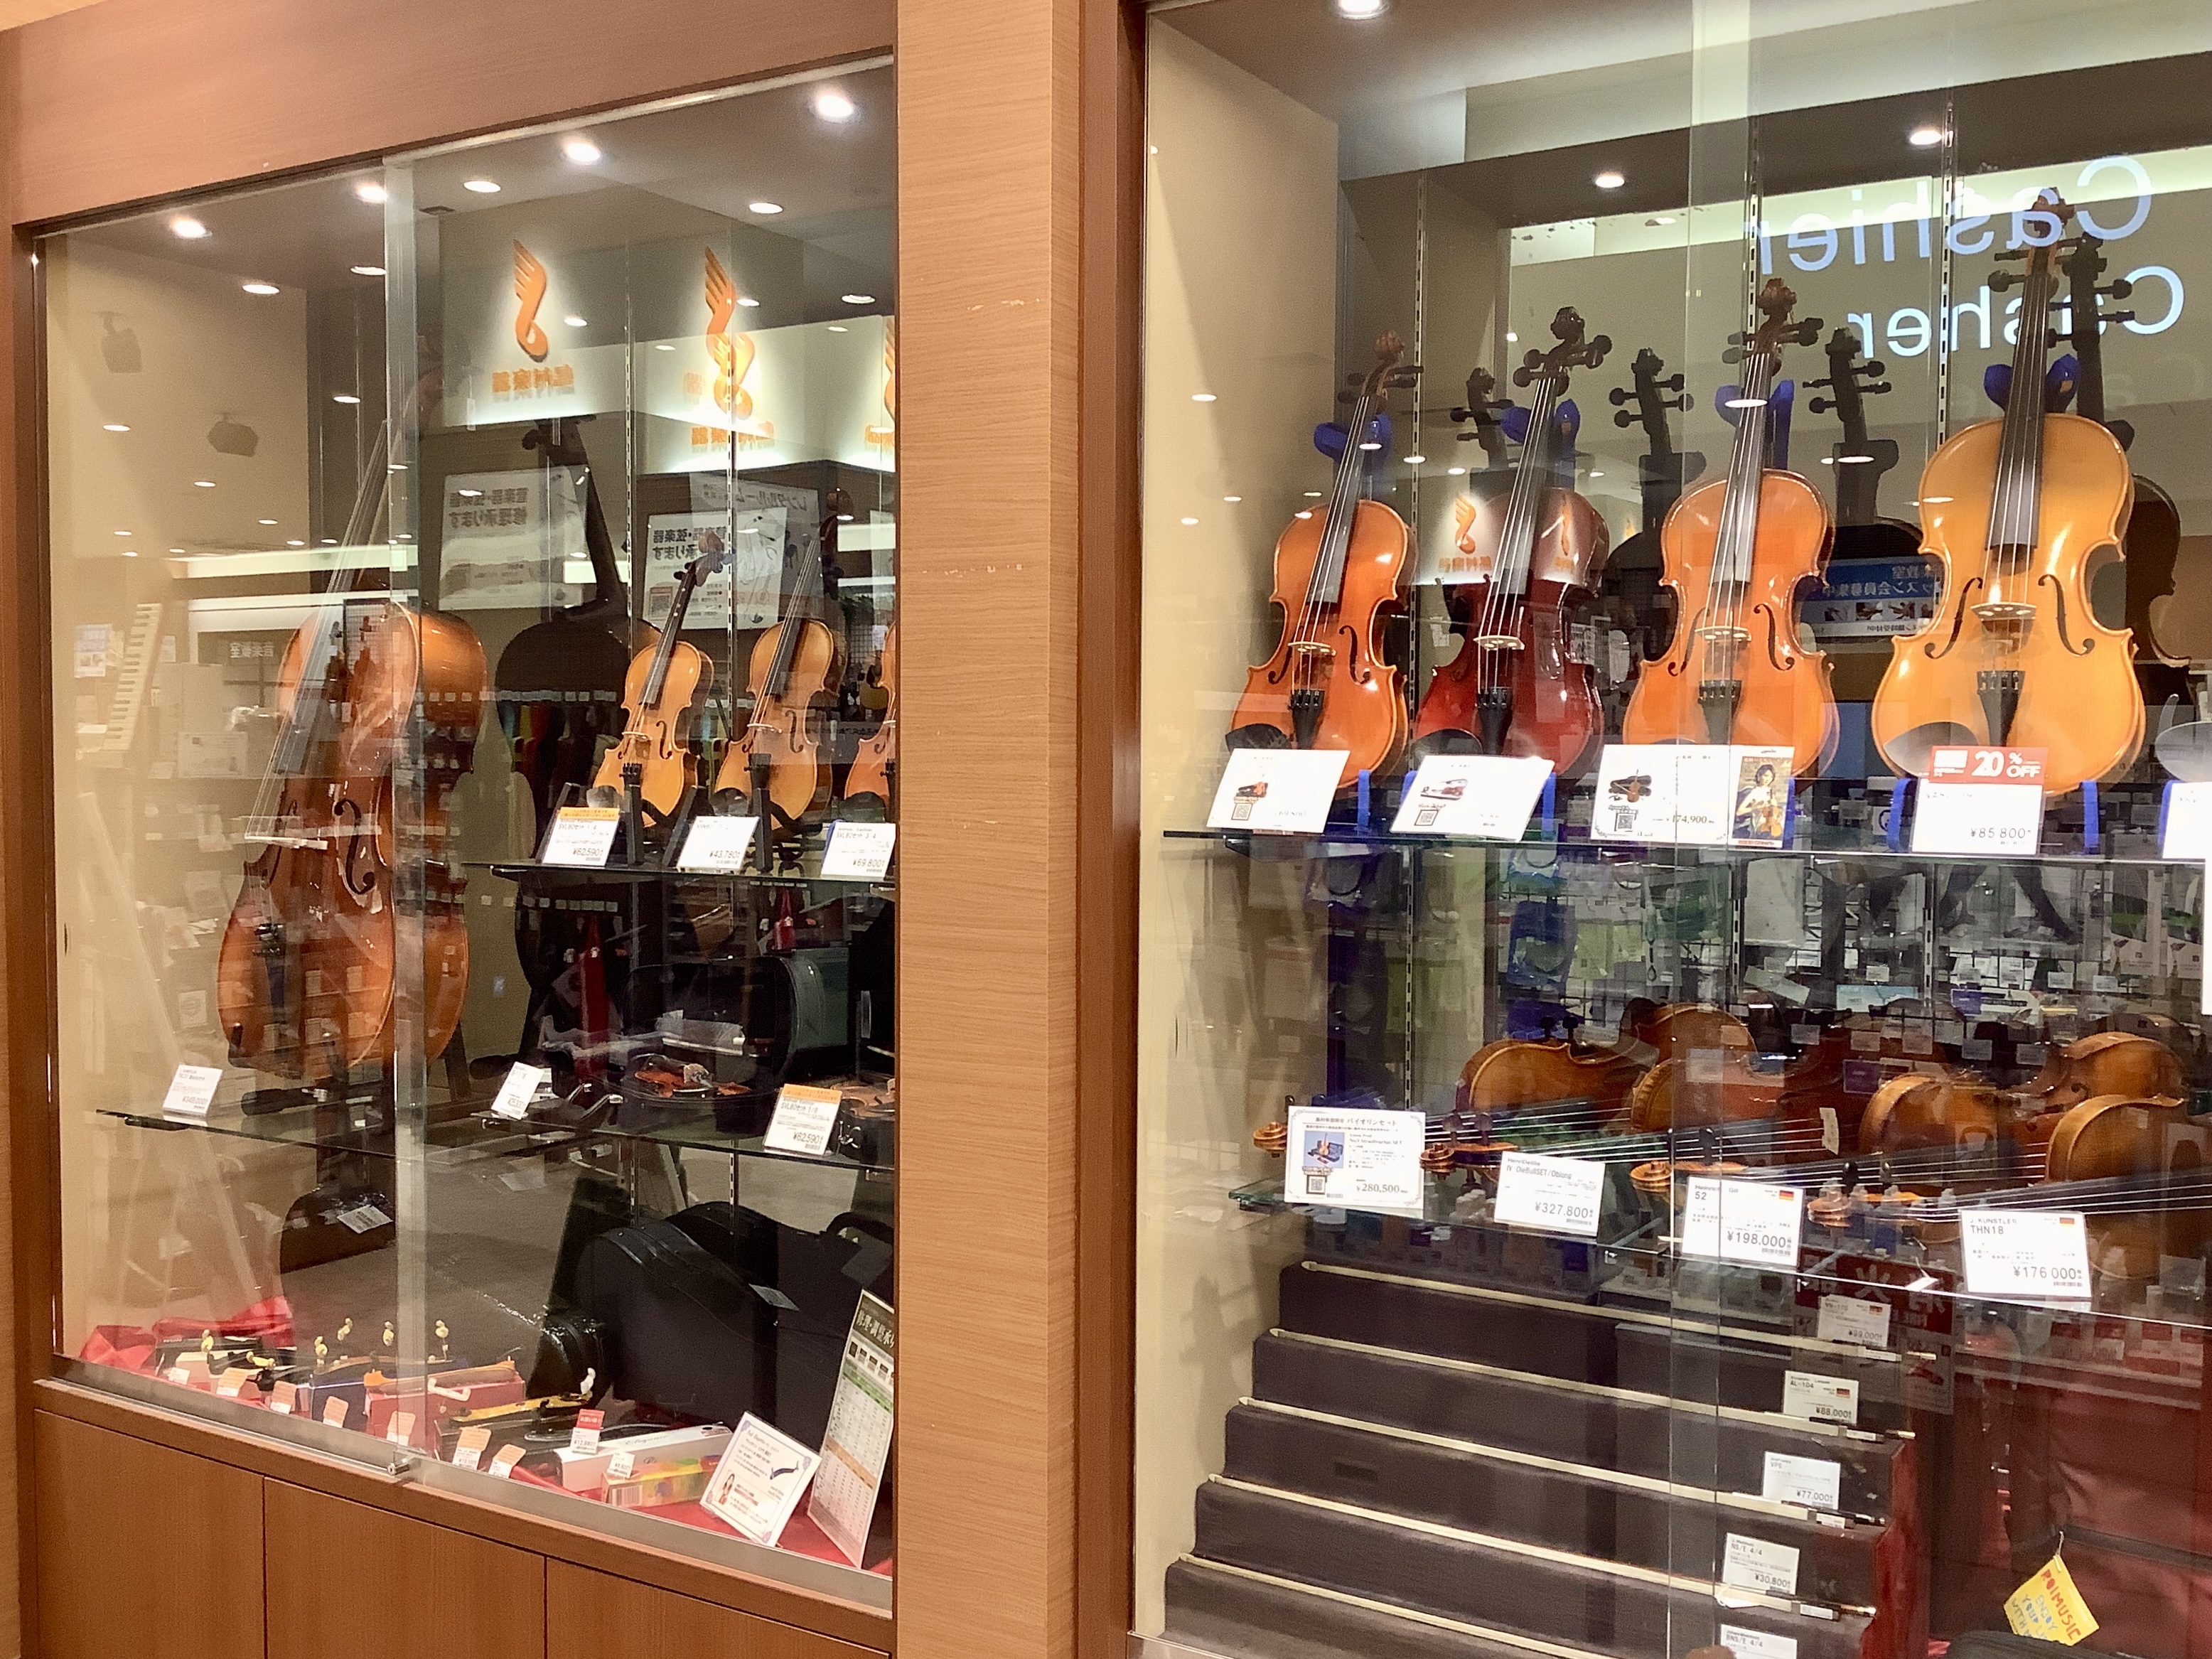 島村楽器イオンモール船橋店ではバイオリンを始めとする弦楽器を多数展示しております。 お求めやすい価格の初心者セットから、ヨーロッパより買い付けました輸入ヴァイオリンまで幅広く取り揃えております。 社内資格「弦楽器アドバイザー」を持つスタッフも多数在籍し、お一人お一人にぴったりの楽器をご紹介させていた […]